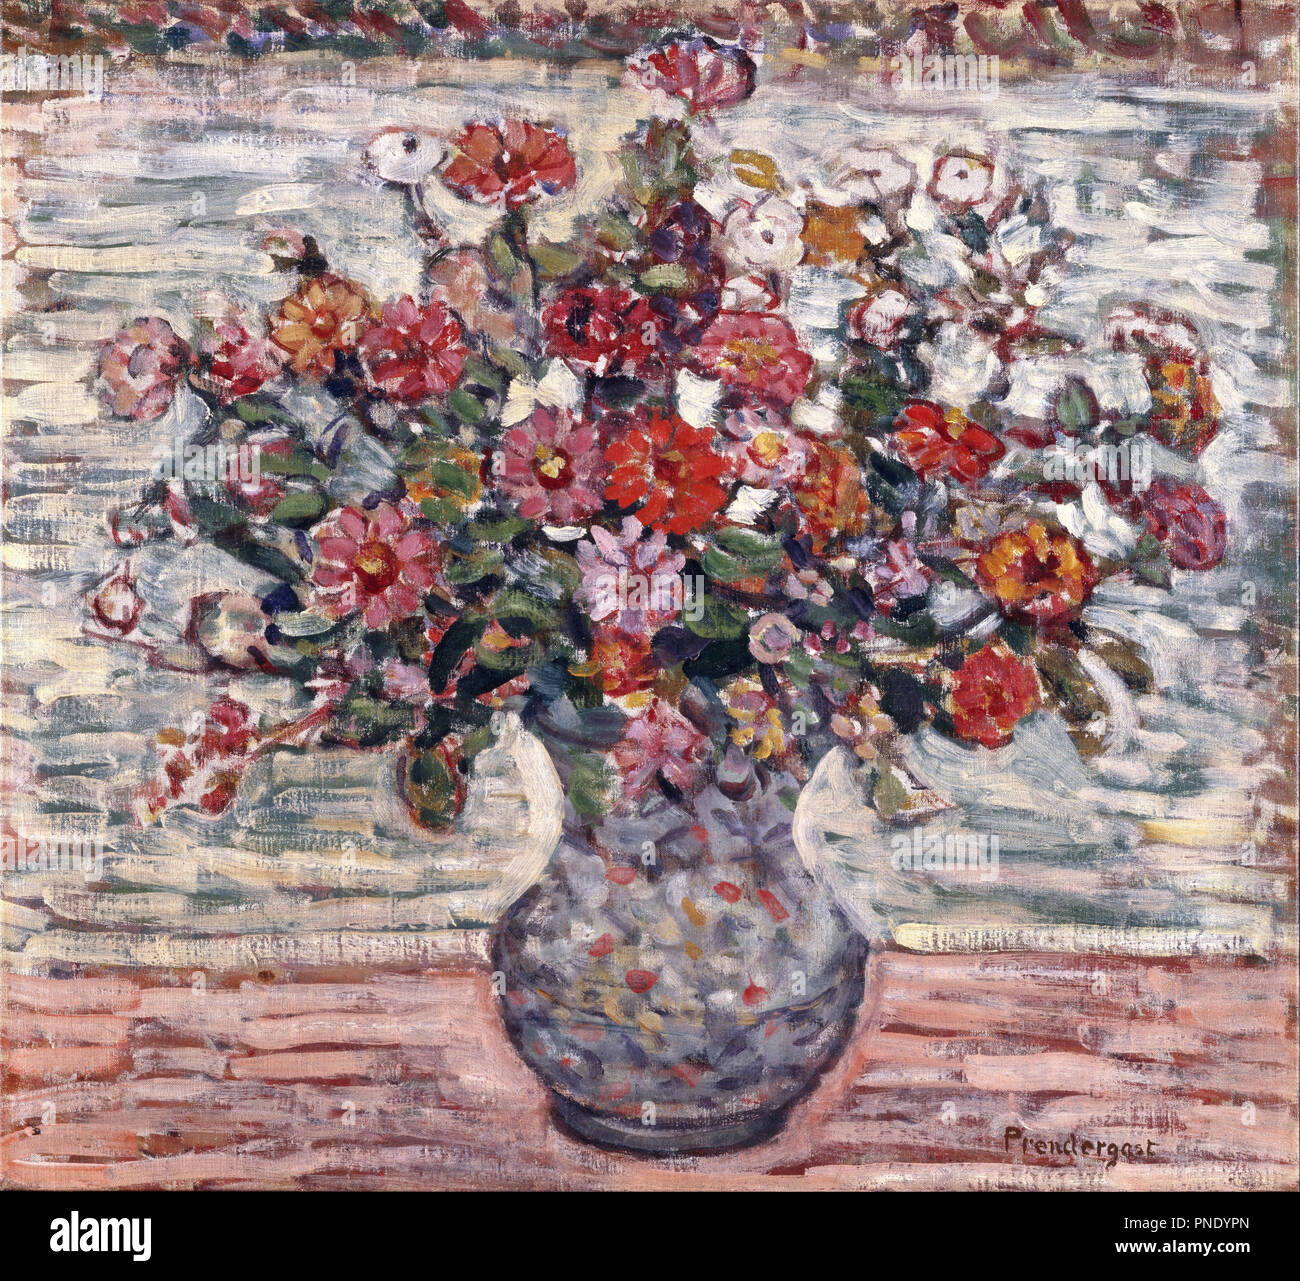 Blumen in einer Vase (zinnien). Datum/Zeit: Ca. 1910-1913. Malerei. Öl auf Leinwand. Autor: Maurice Prendergast. Stockfoto